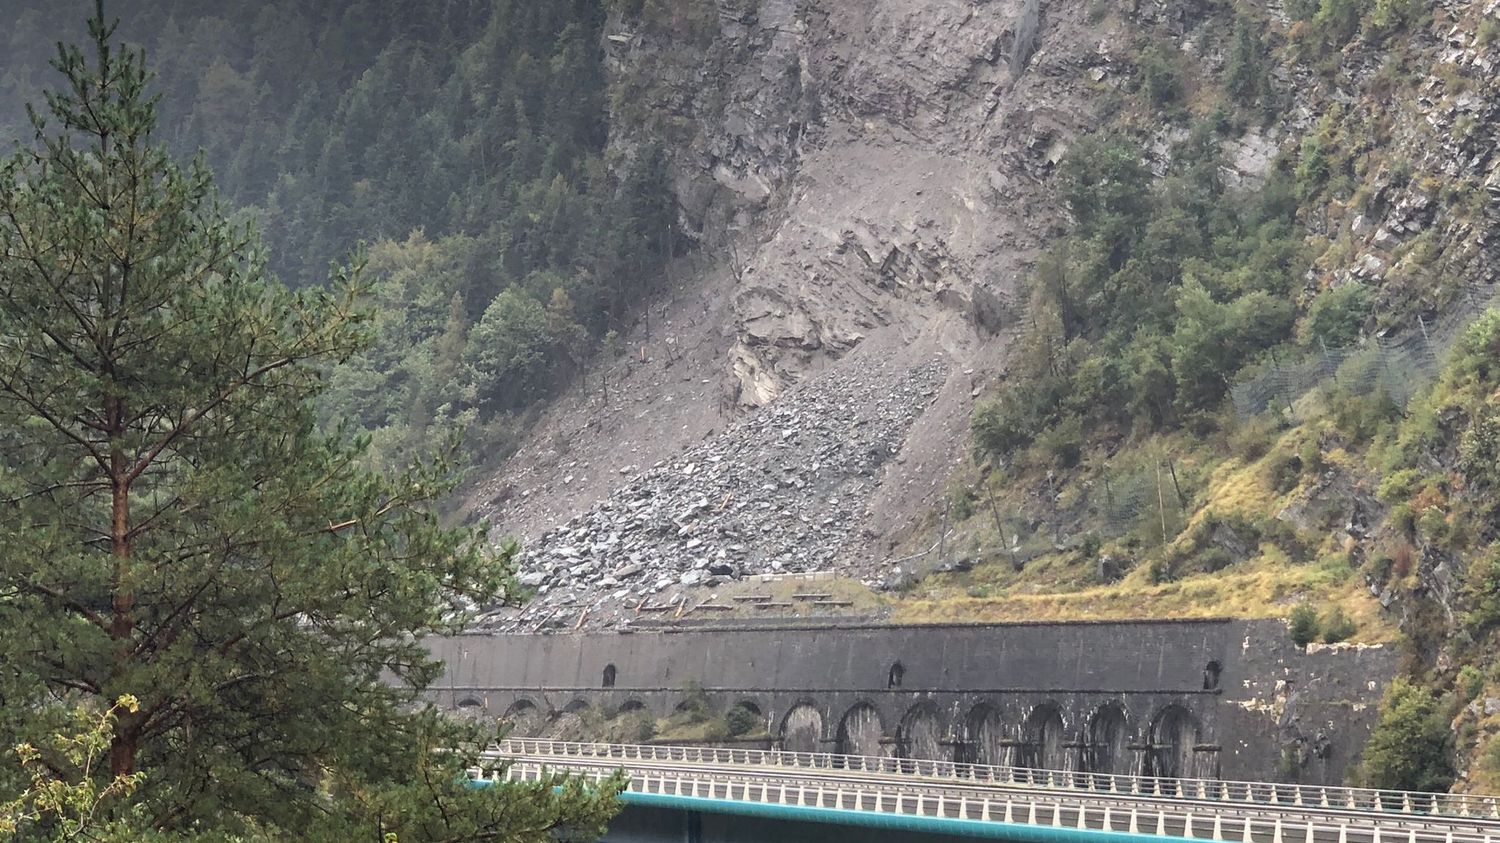 Eboulement en Maurienne : « Le trafic transalpin est en état d’urgence absolue », alerte le maire de Chamonix-Mont-Blanc Eric Fournier